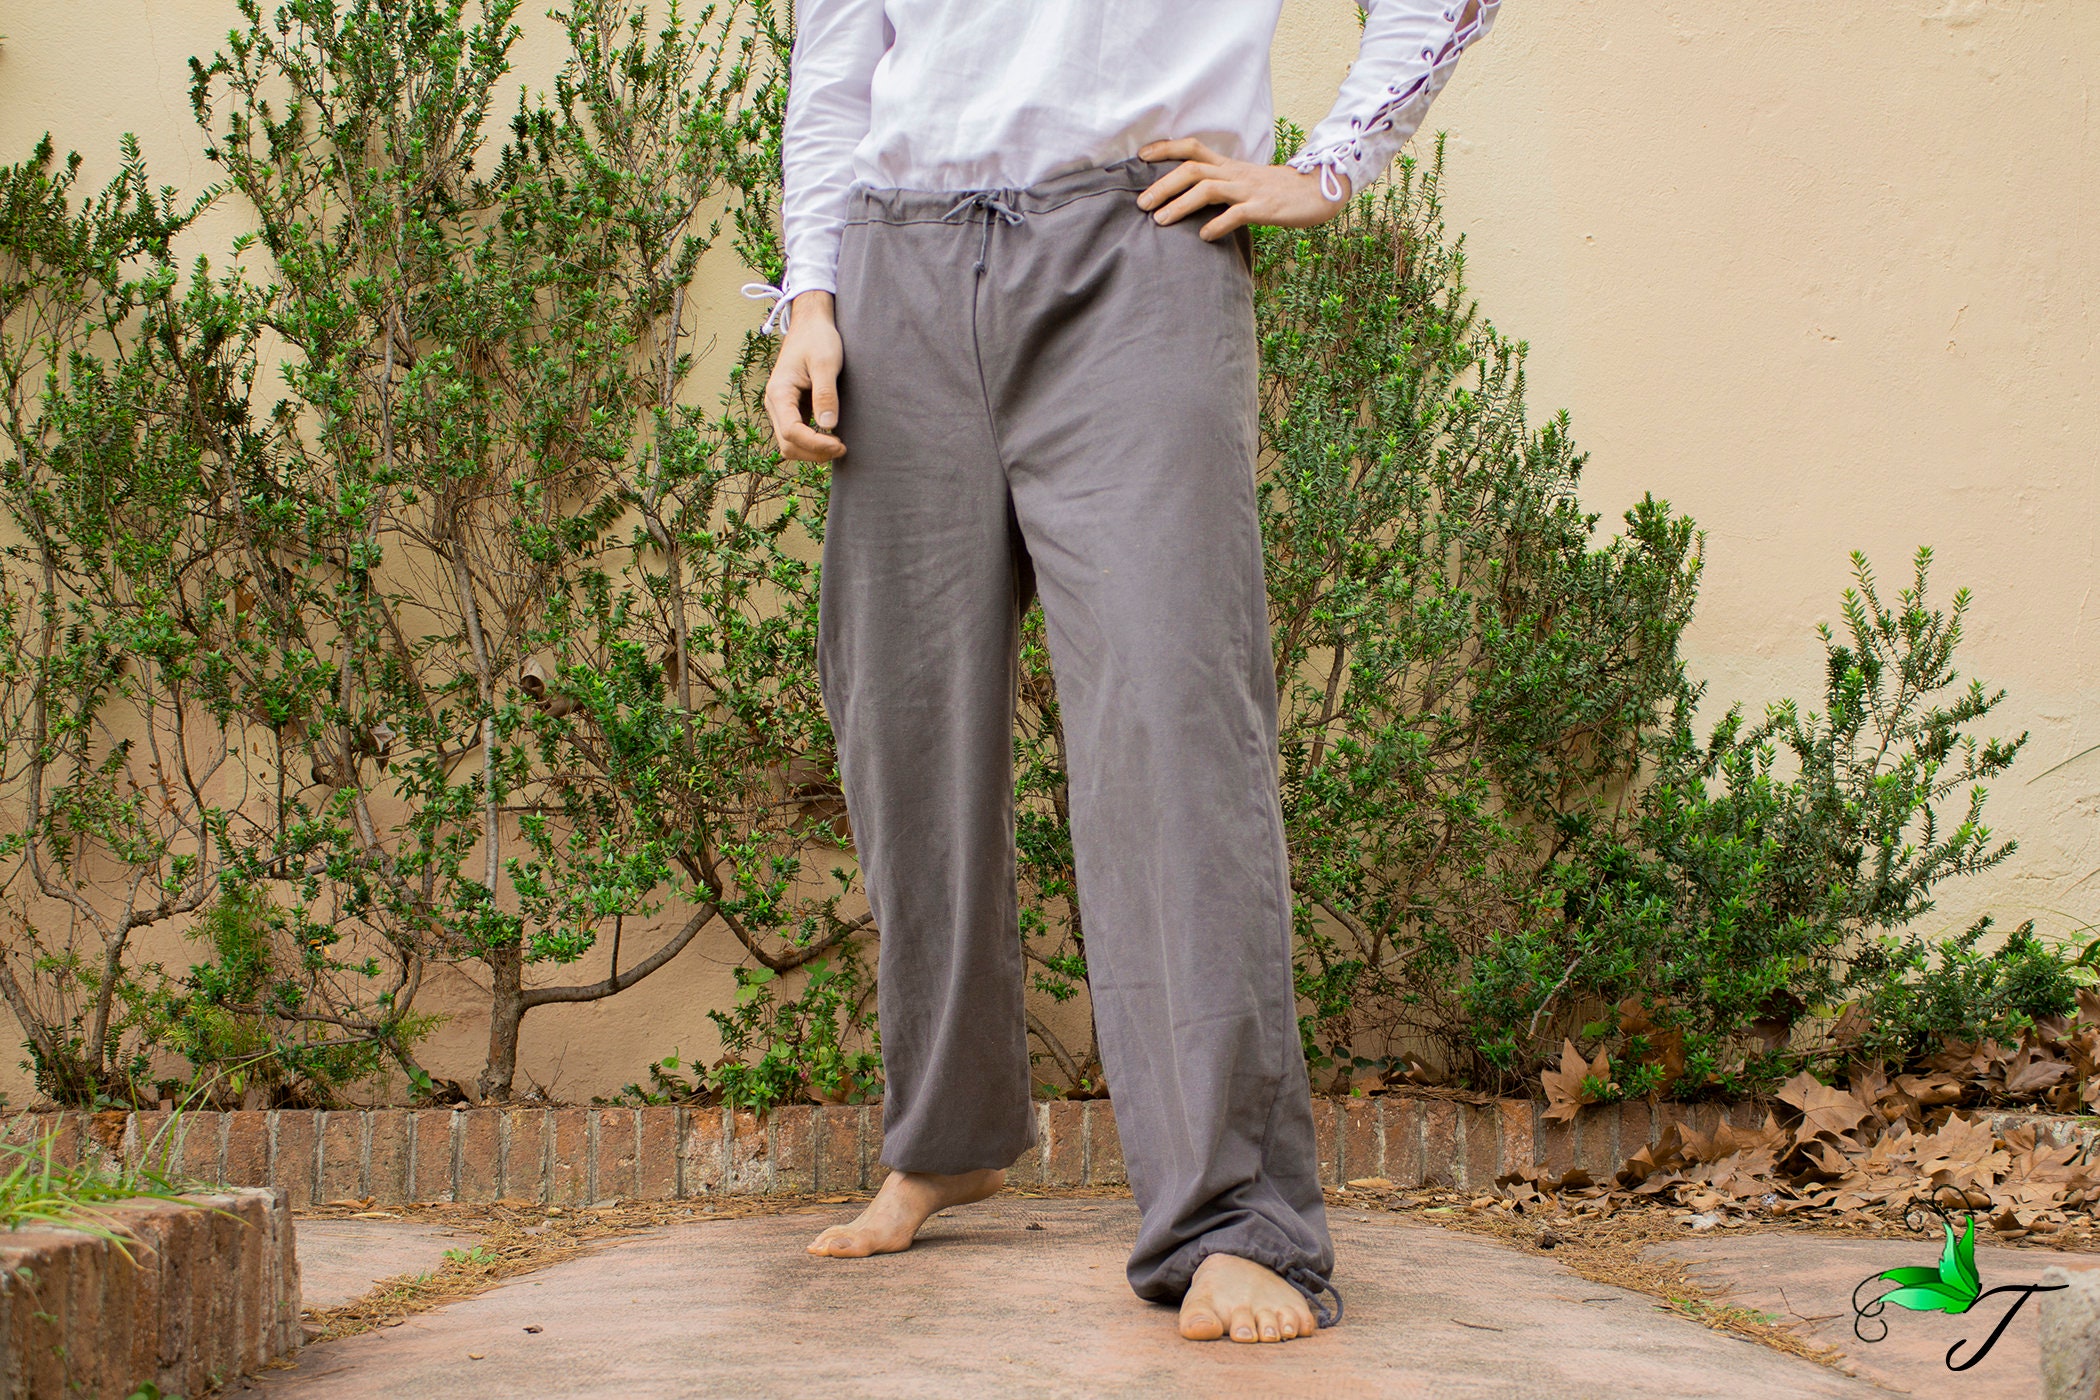 Mens Linen Lounge Pants Weekend Linen Pants Yoga Pants Pajamas